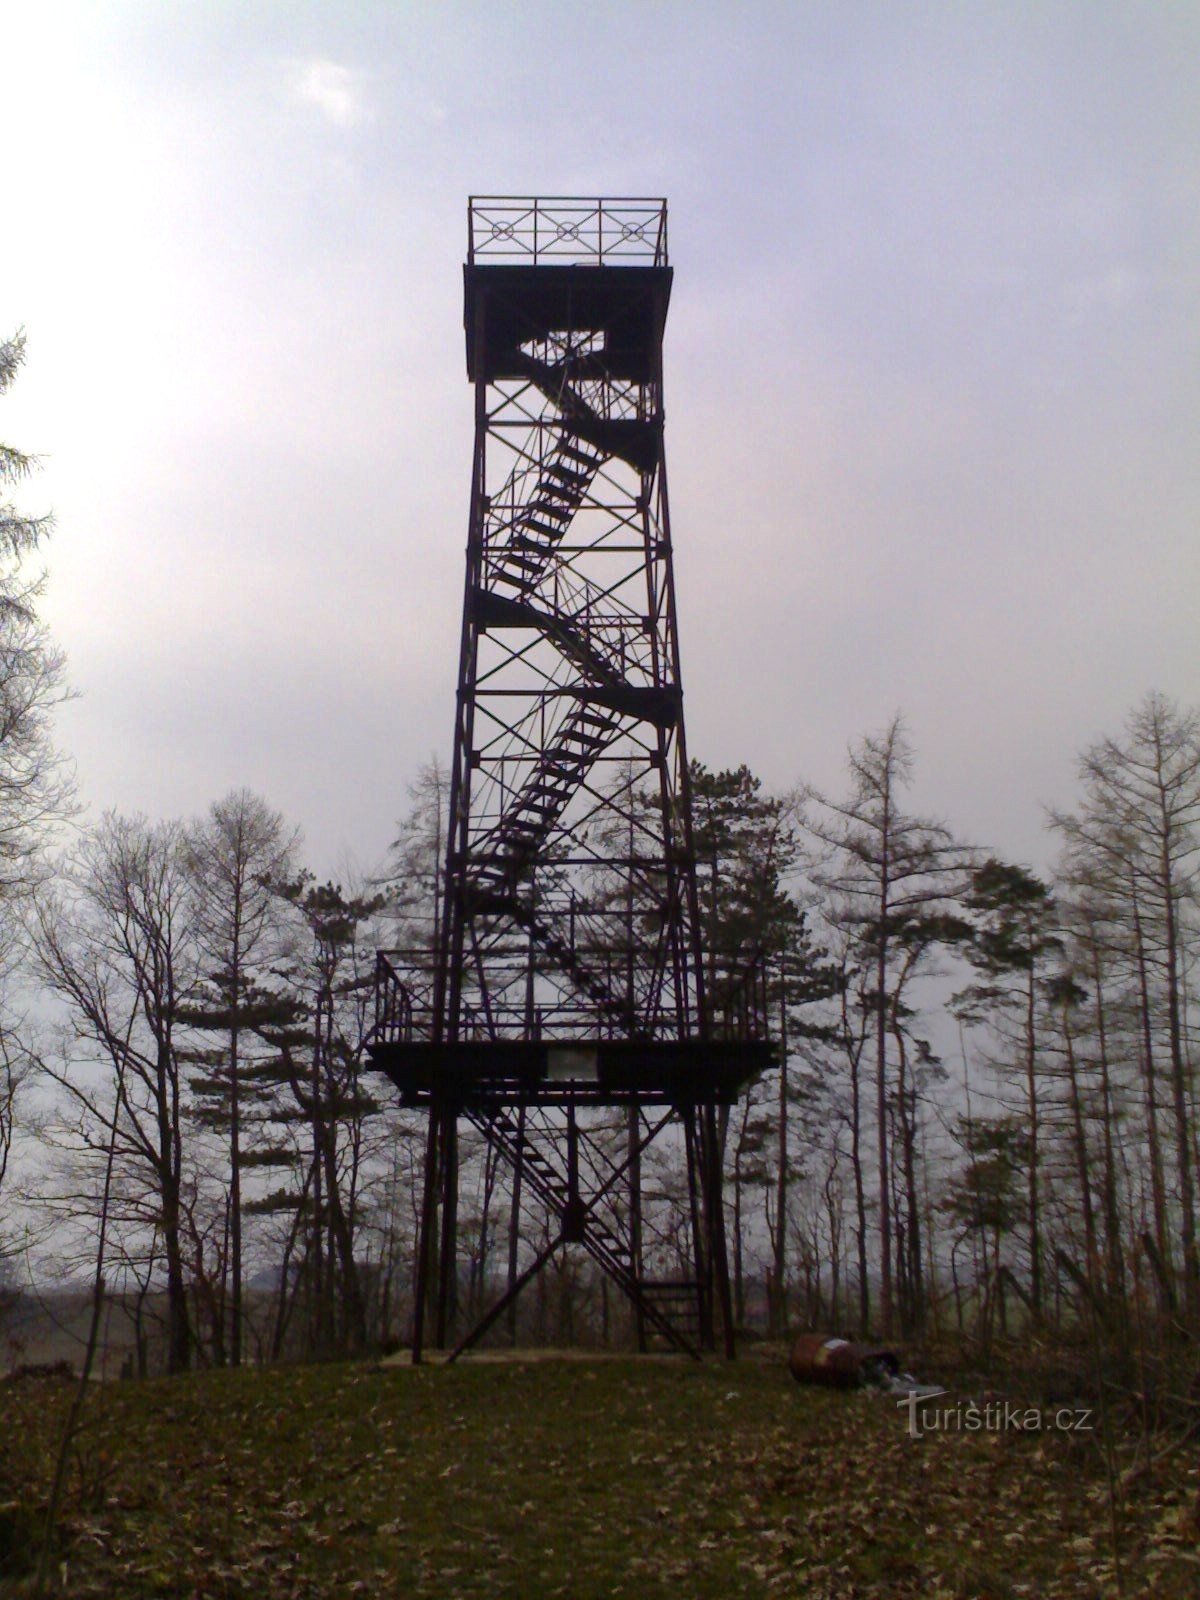 Libníkovice - torre de vigilancia